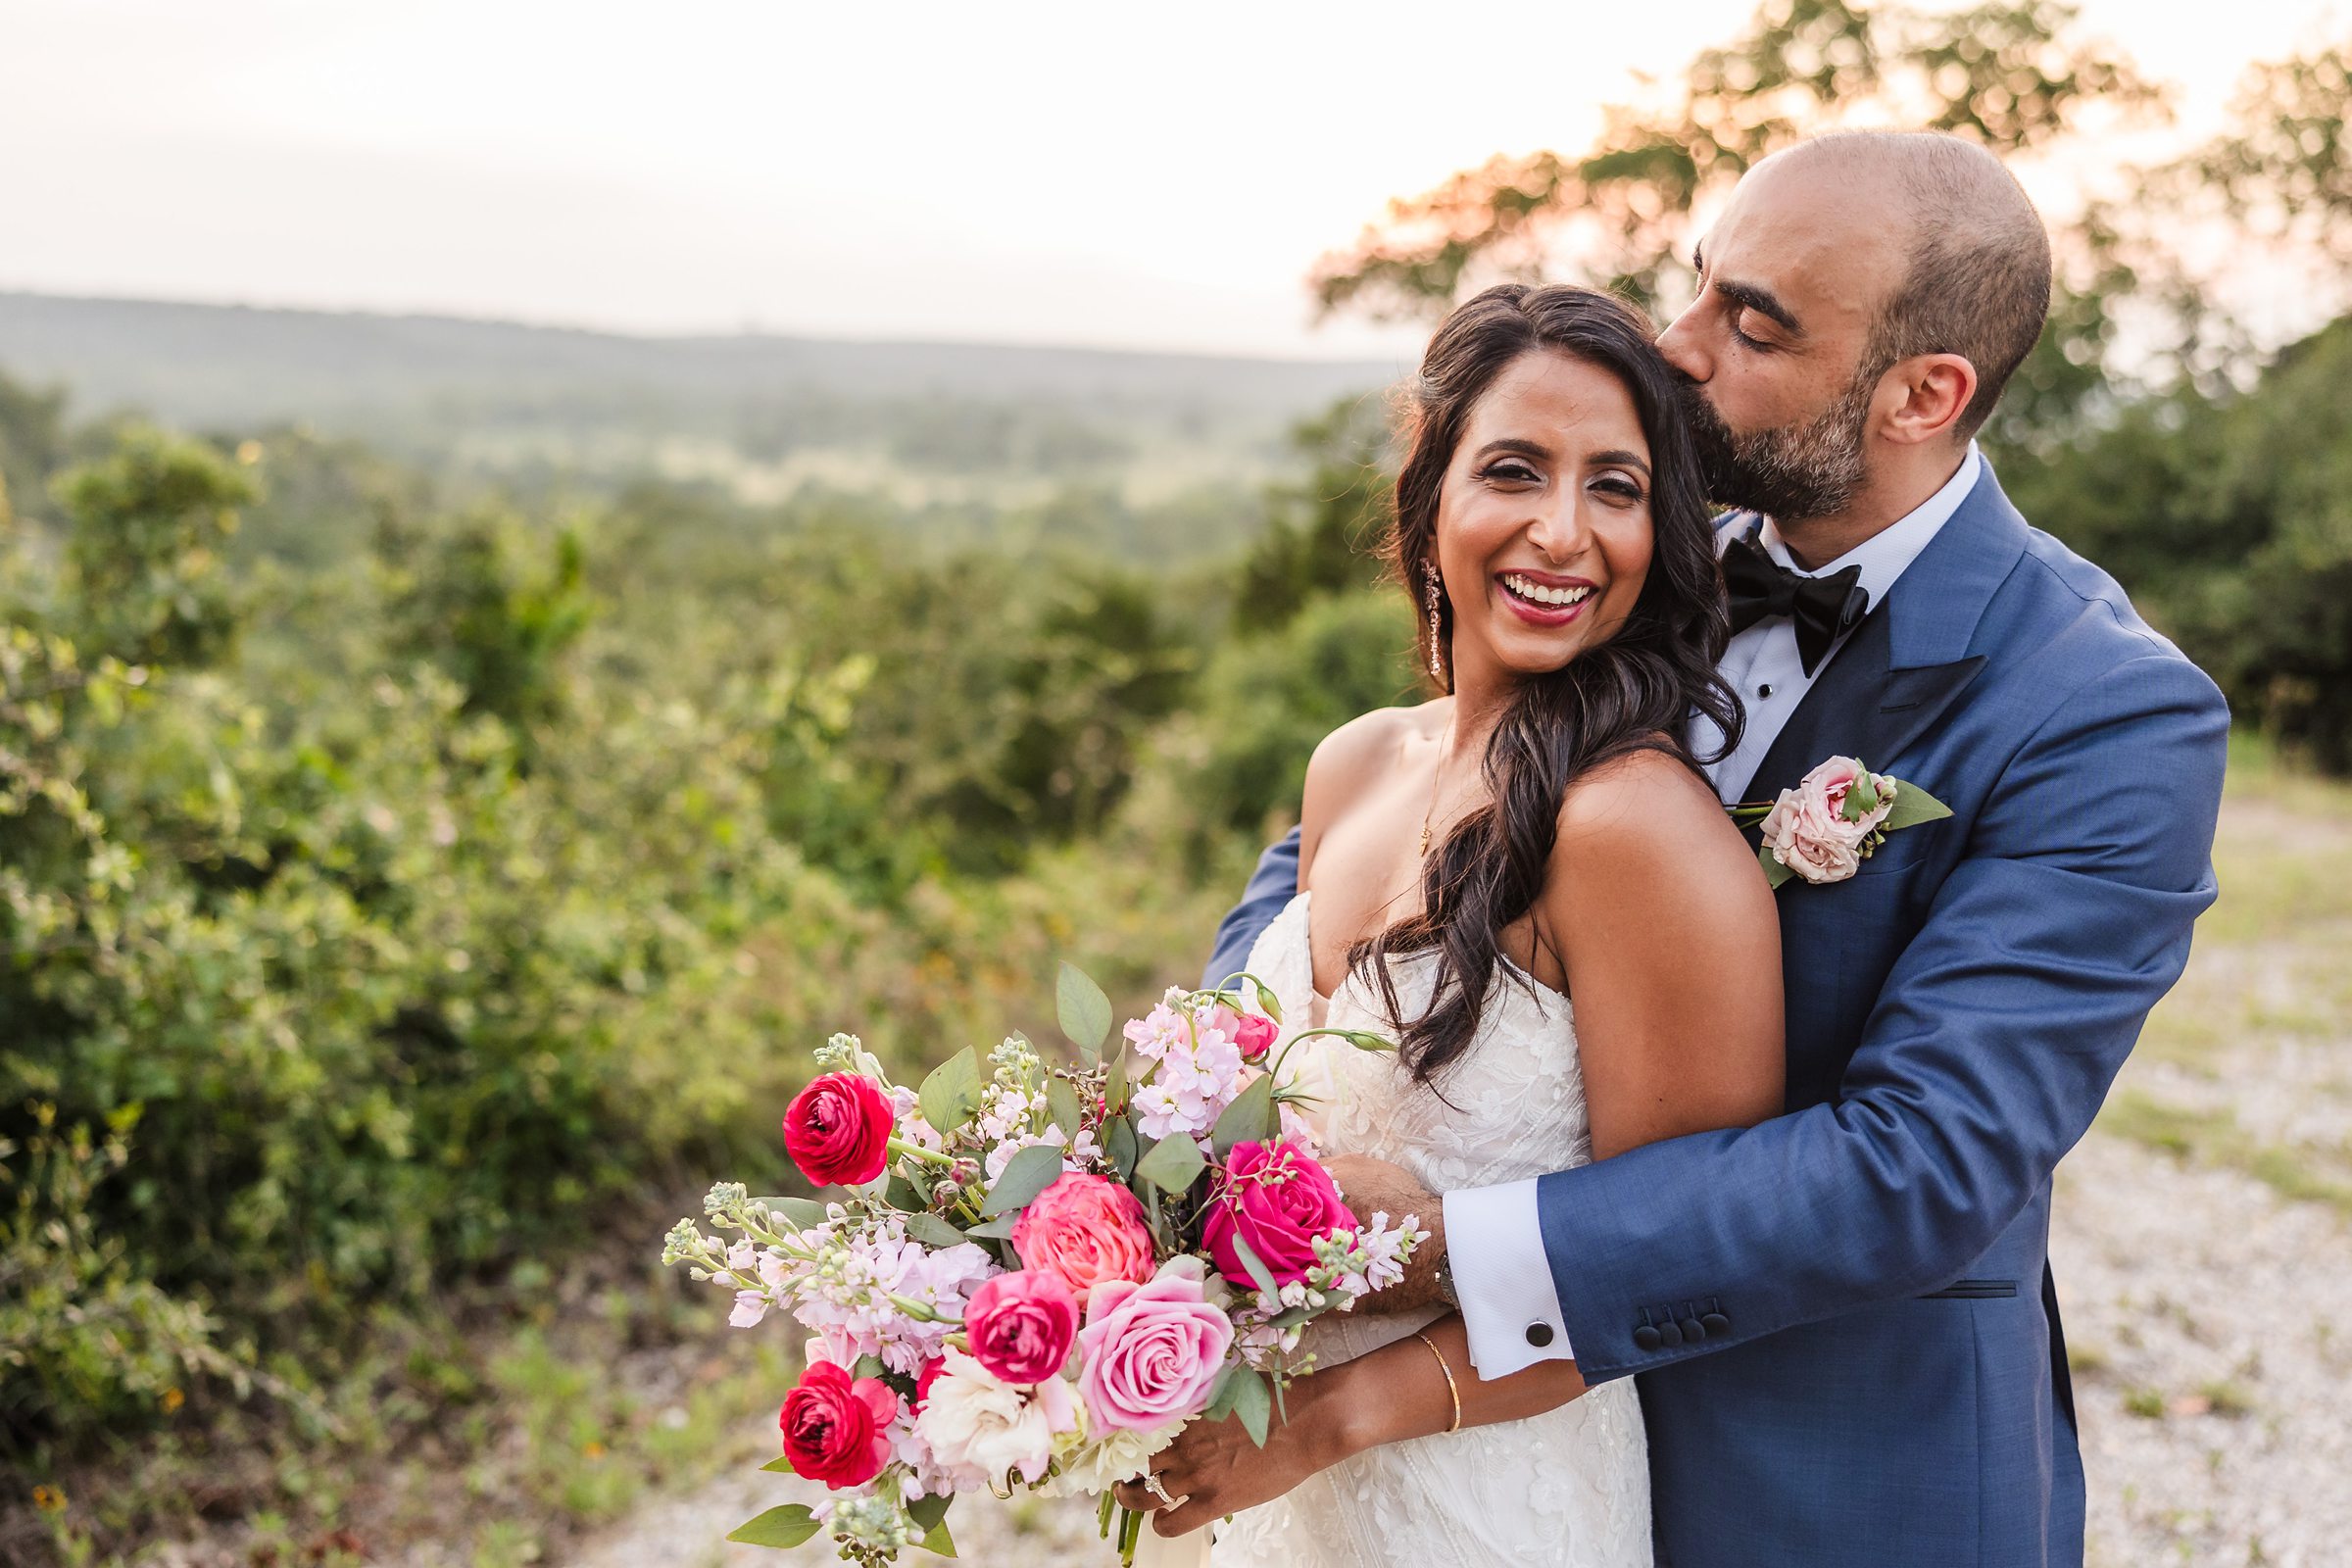 Bride and groom celebrate during a wedding at the Shiraz Garden in Bastrop, Texas.